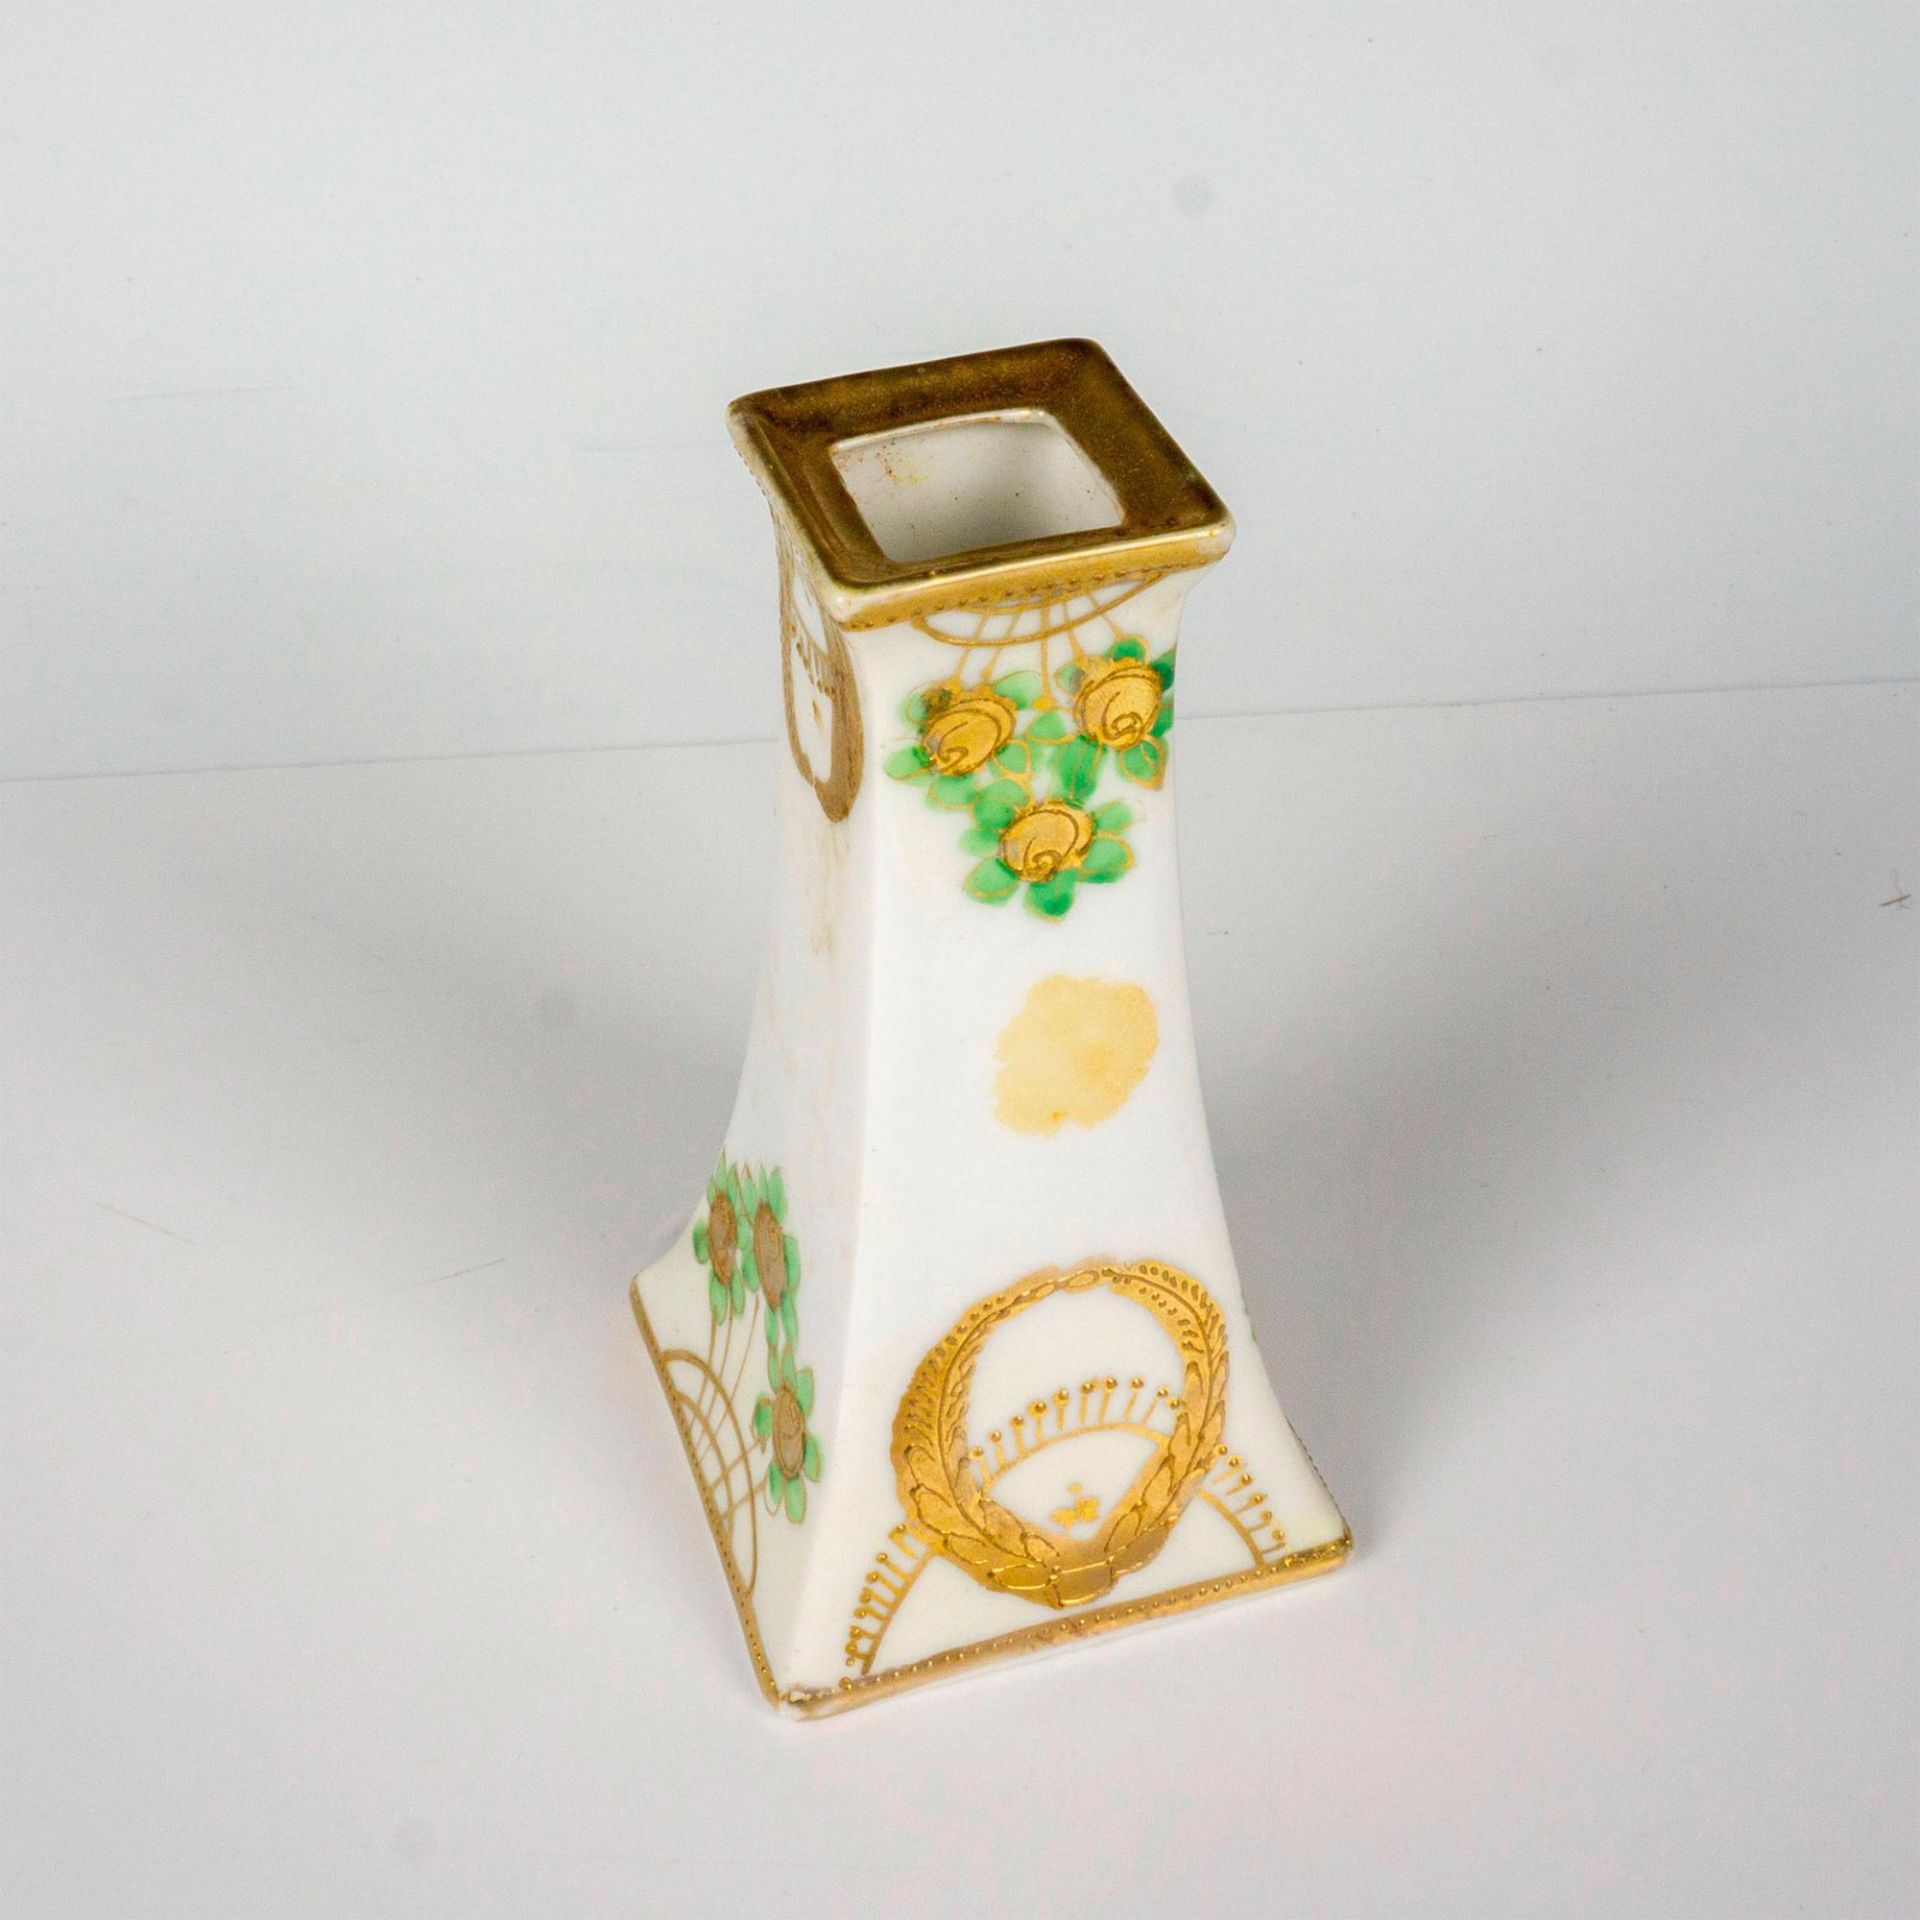 Antique Nippon Porcelain Hatpin Holder - Image 2 of 3